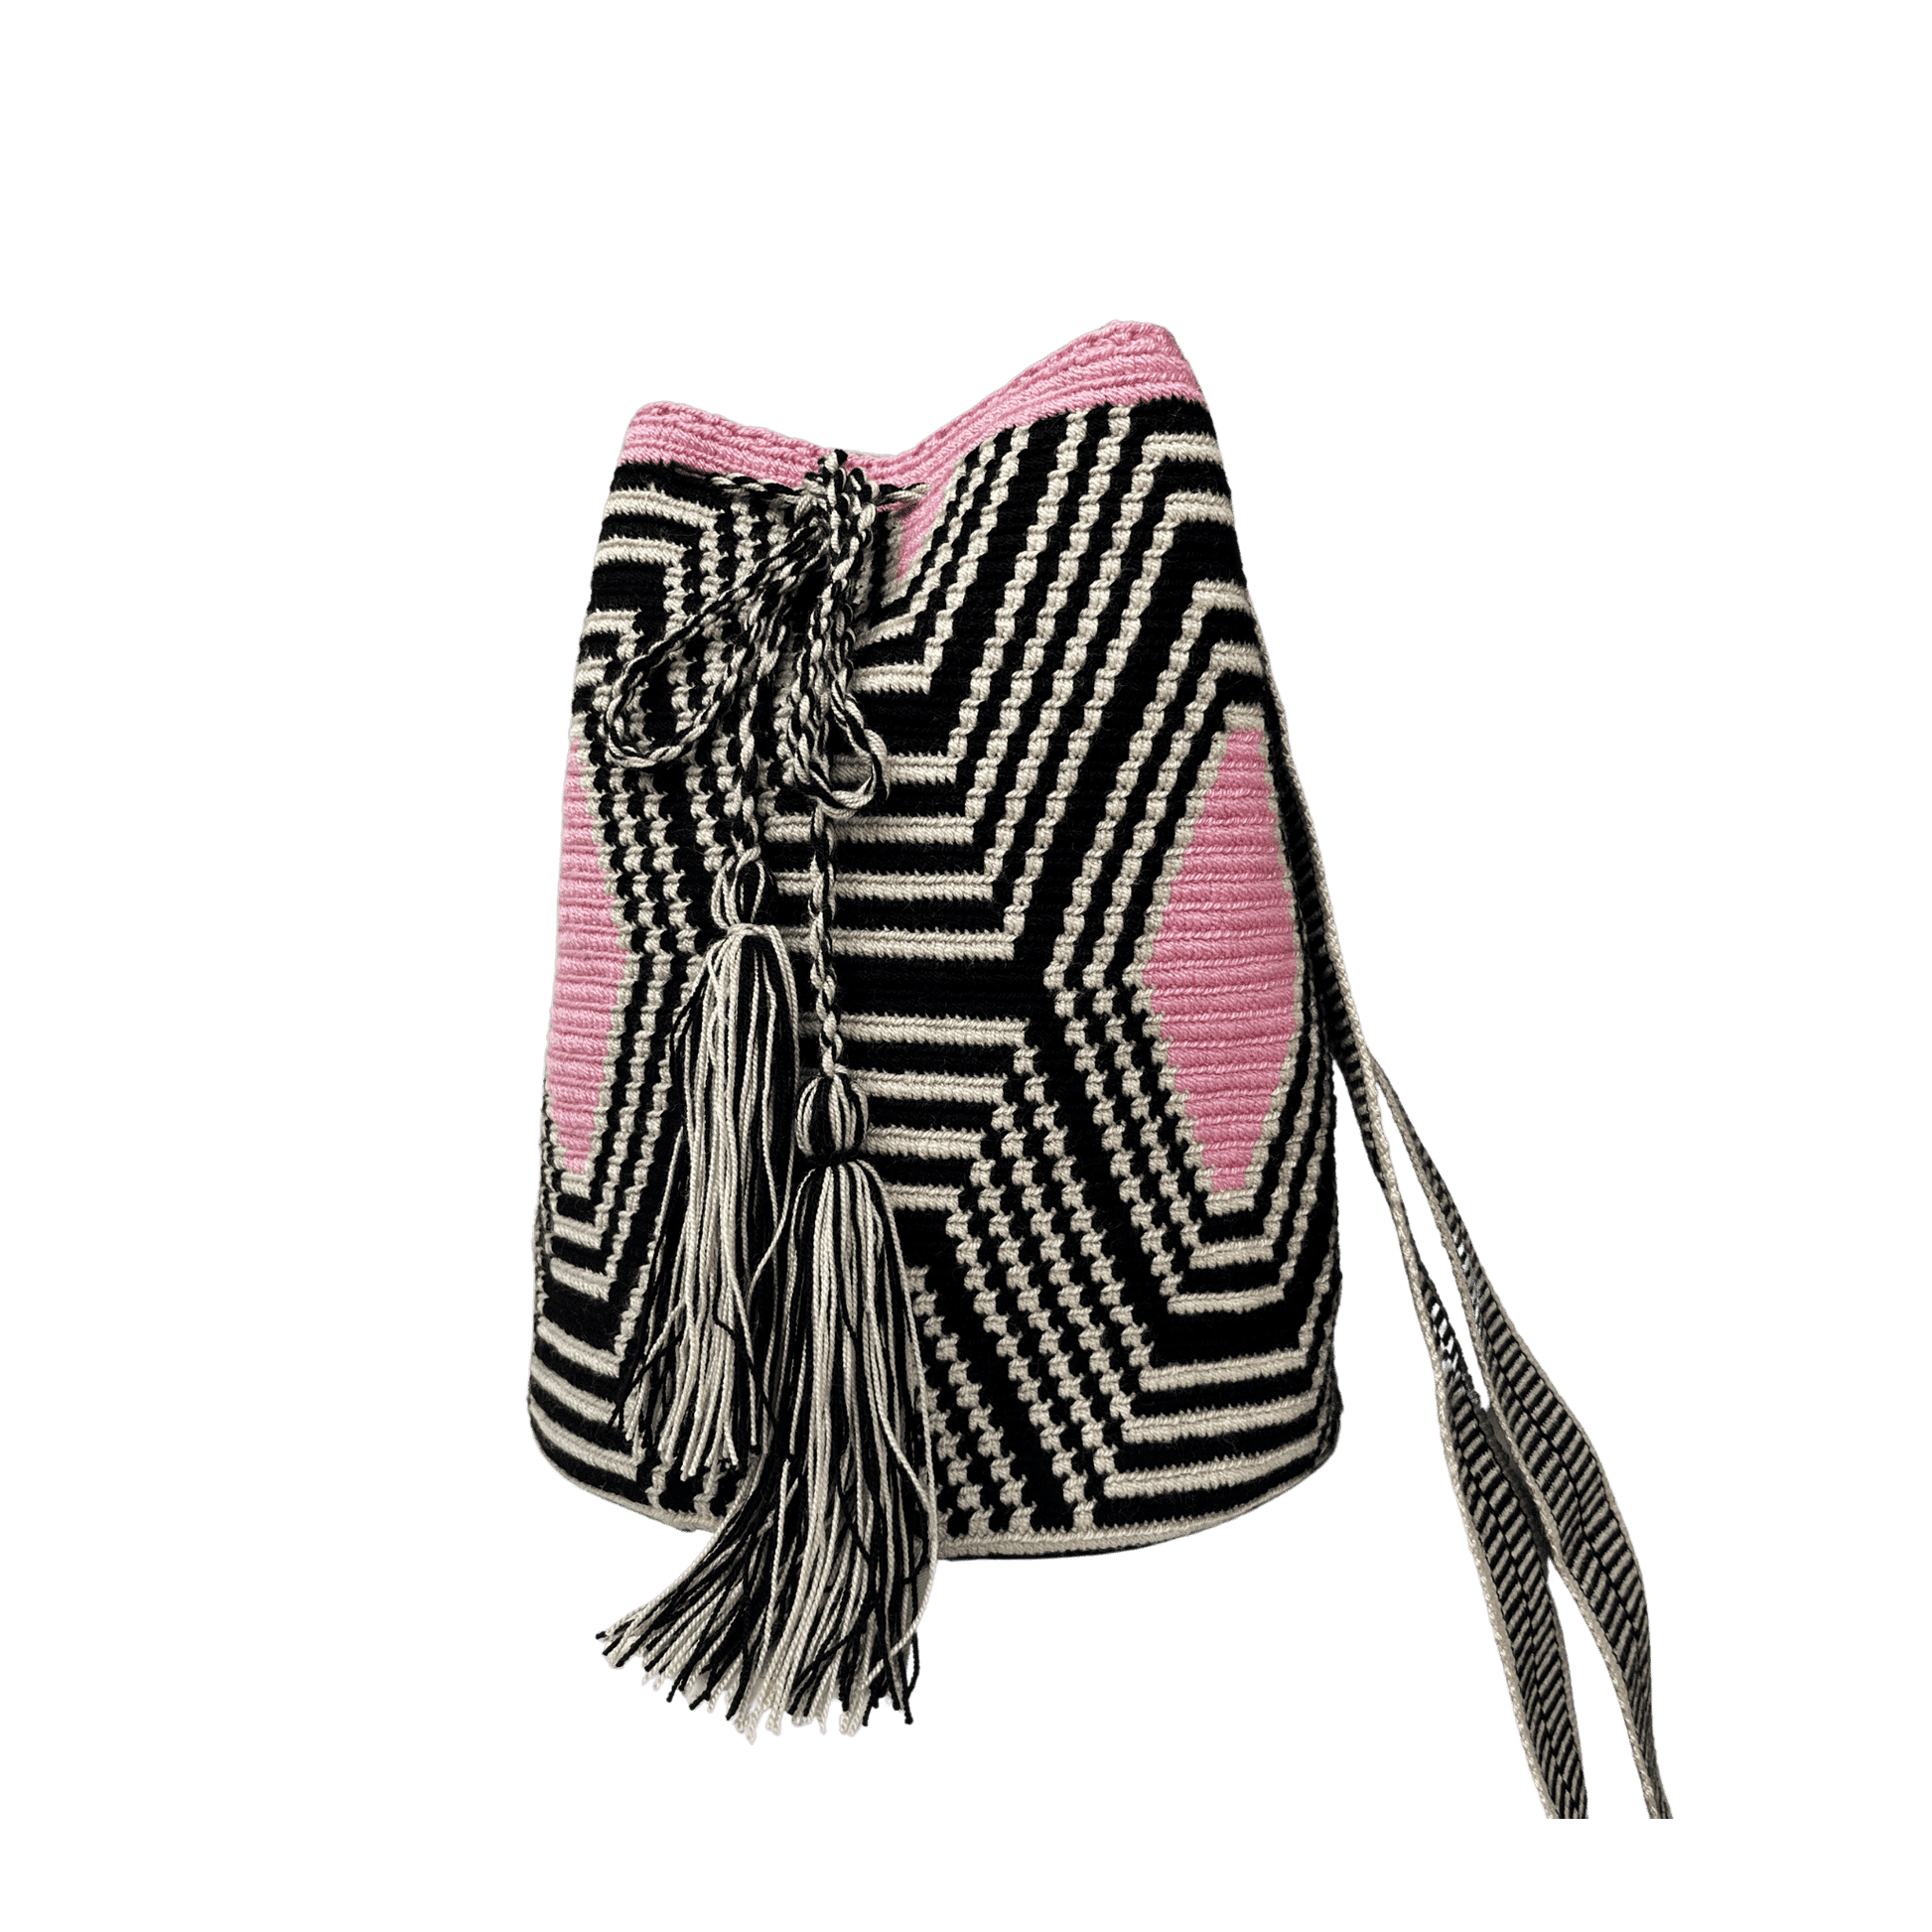 Mochila wayuu colores negro, beige y rosado